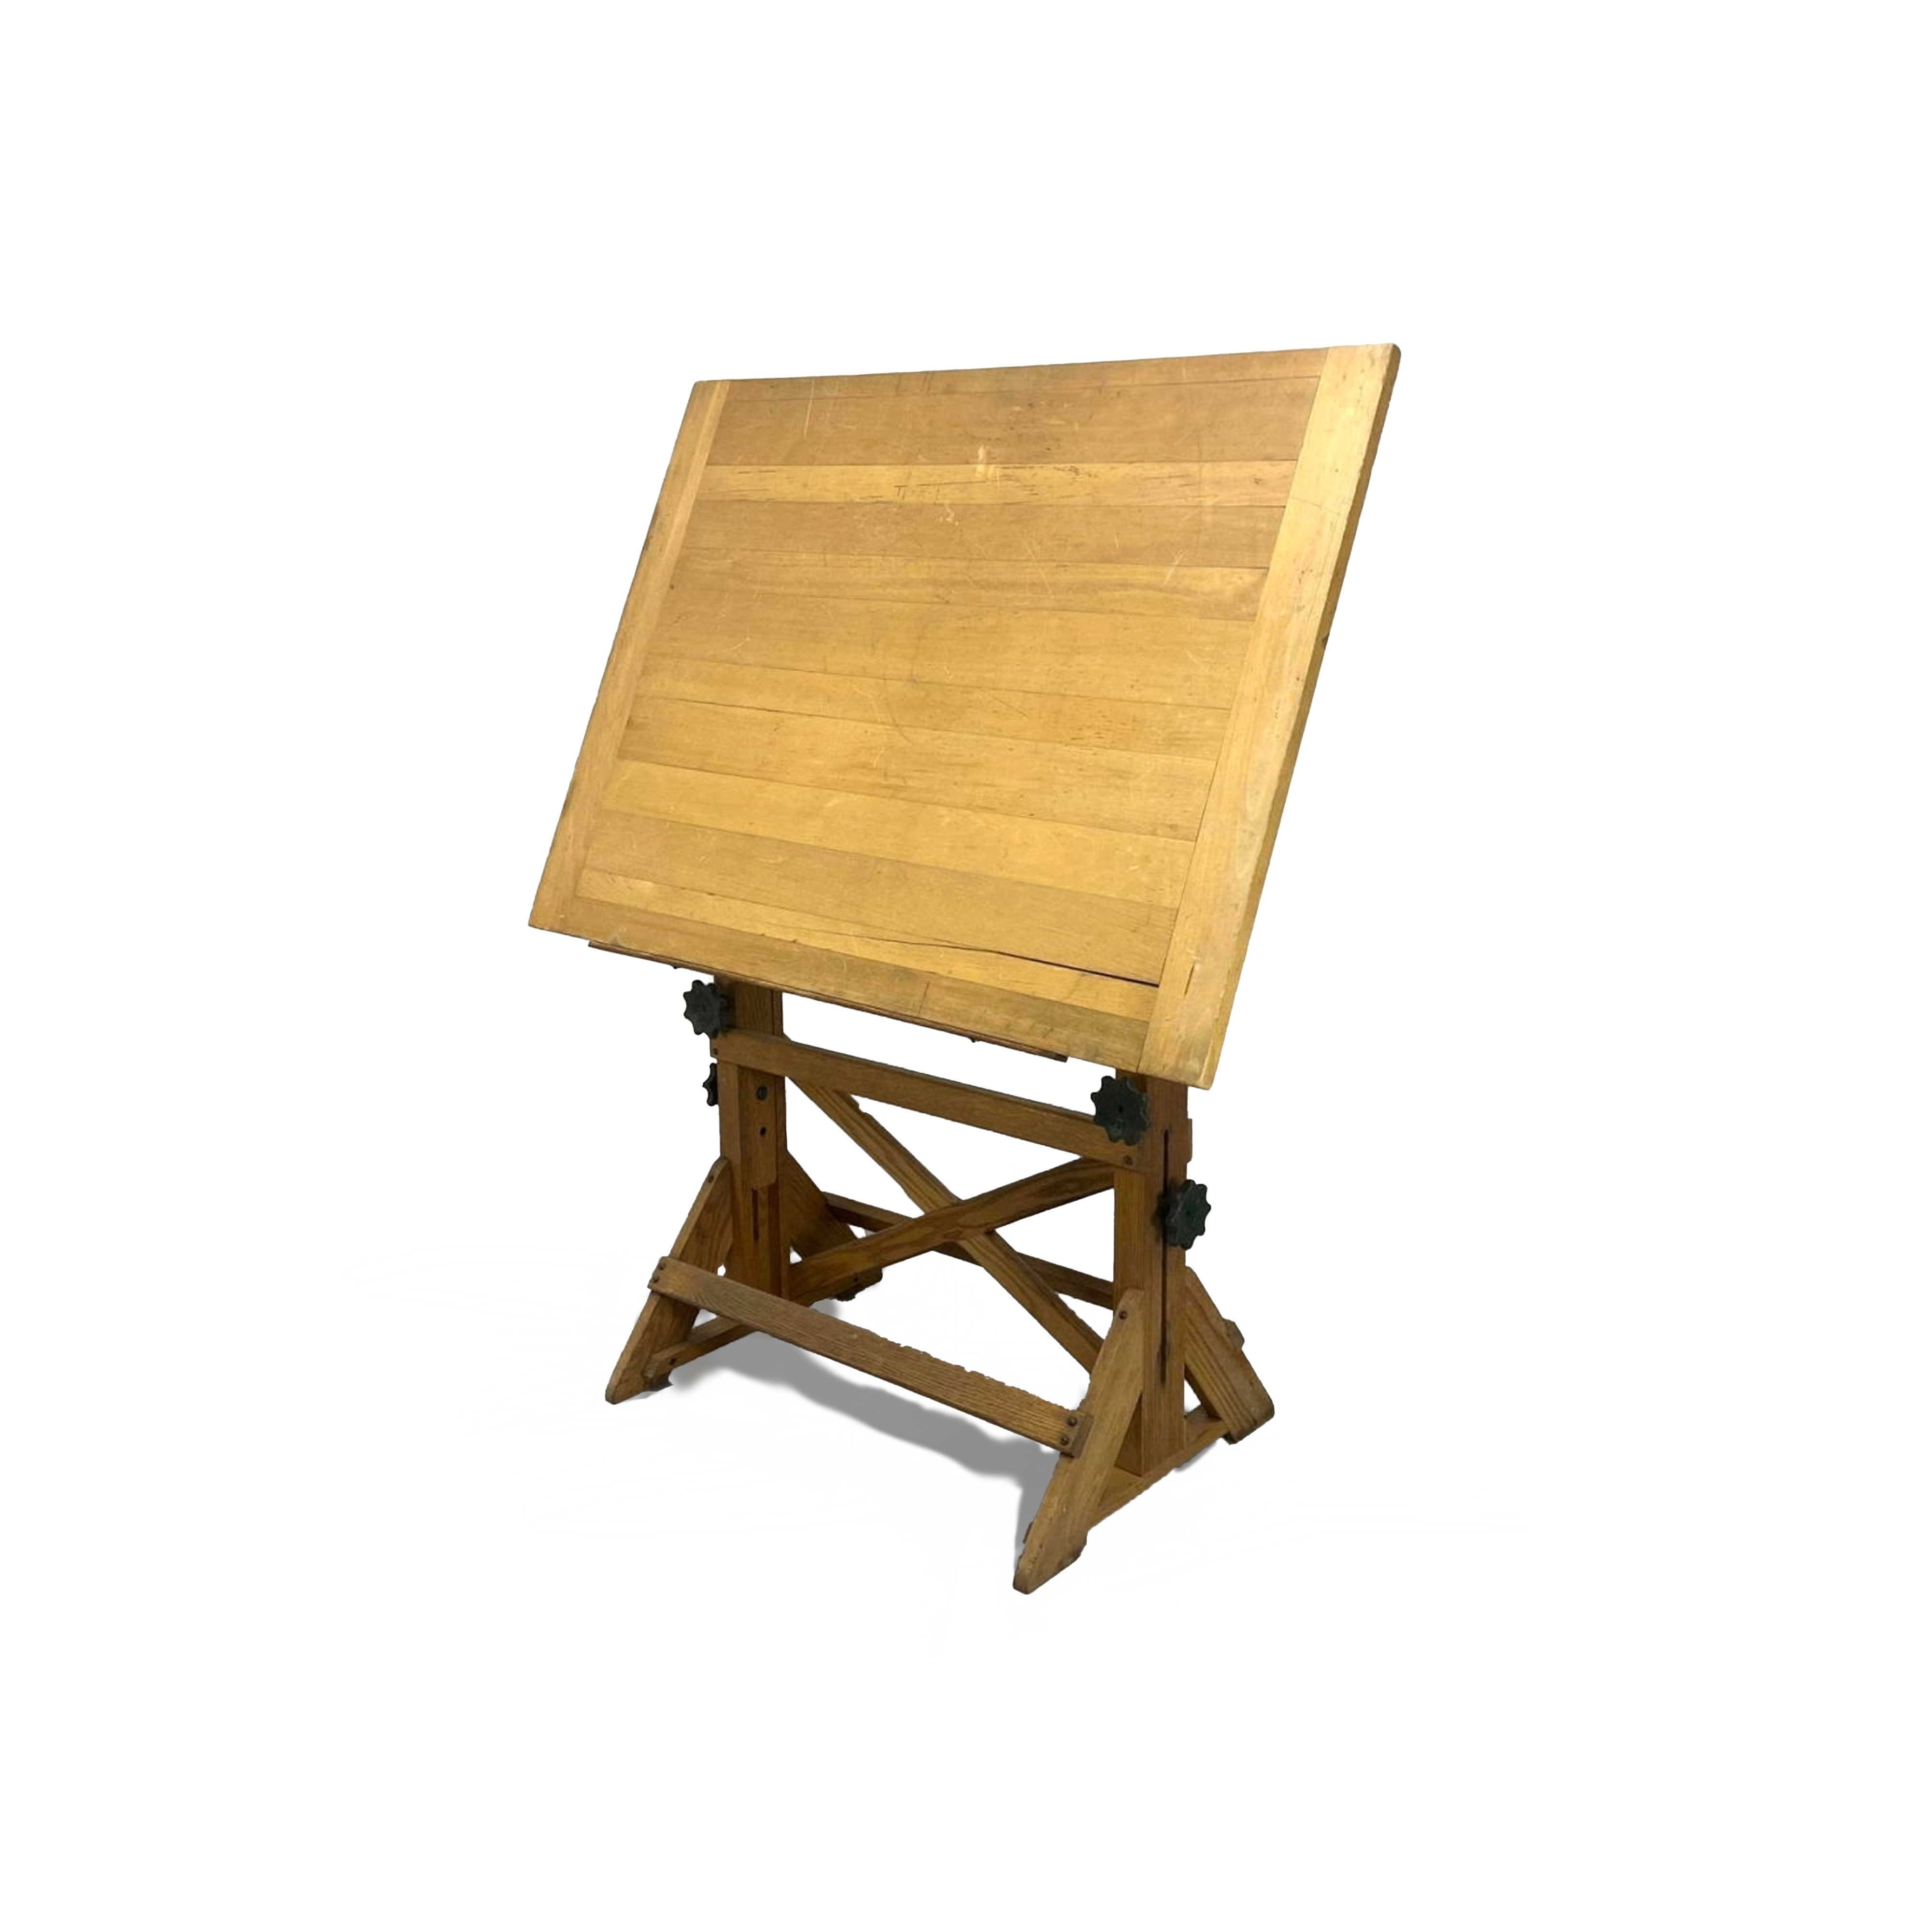 F. Weber Adjustable Wood Drafting Table